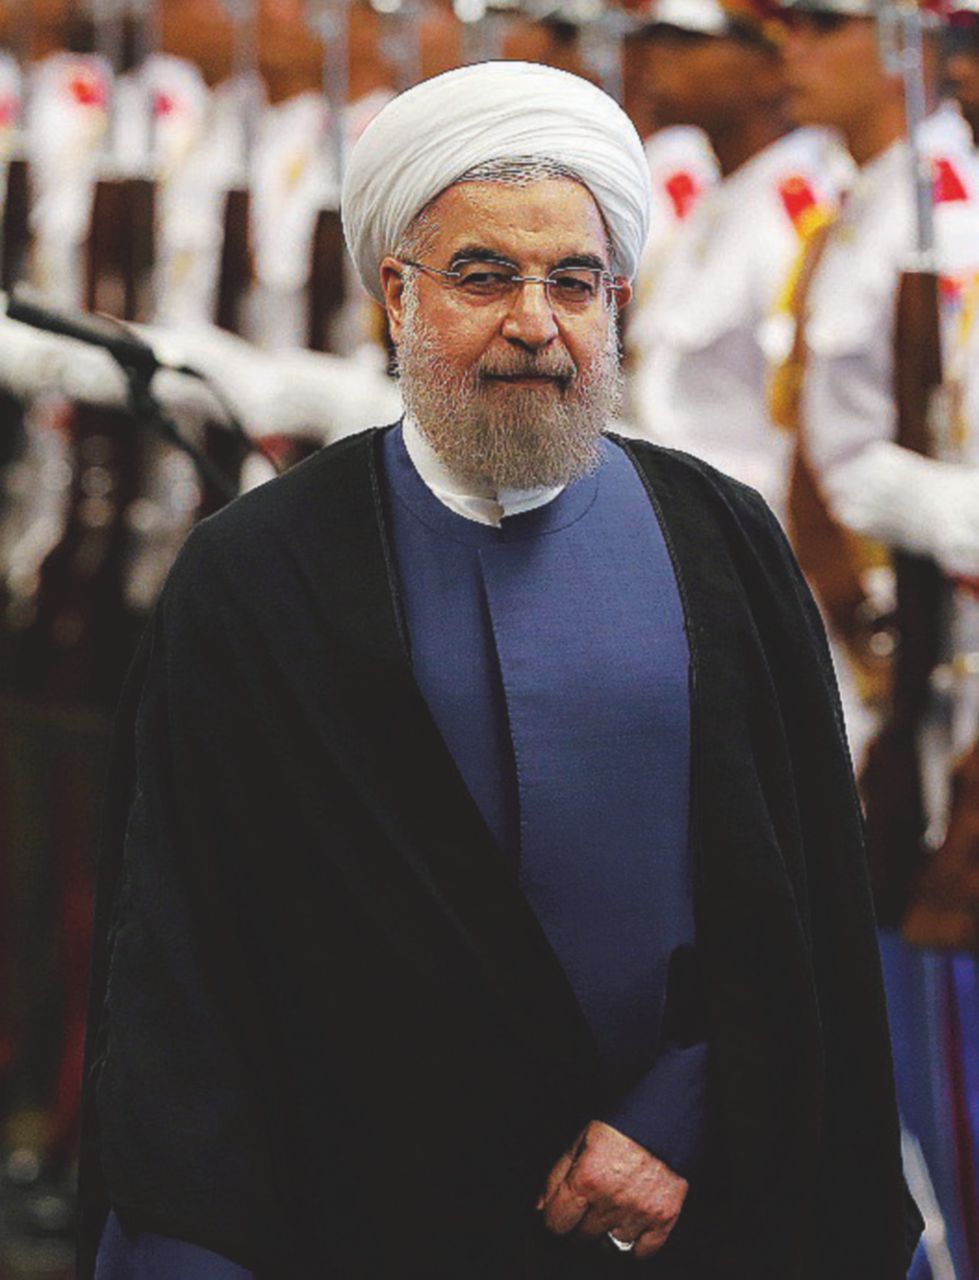 Copertina di La minaccia di Rouhani: “Torniamo al nucleare”